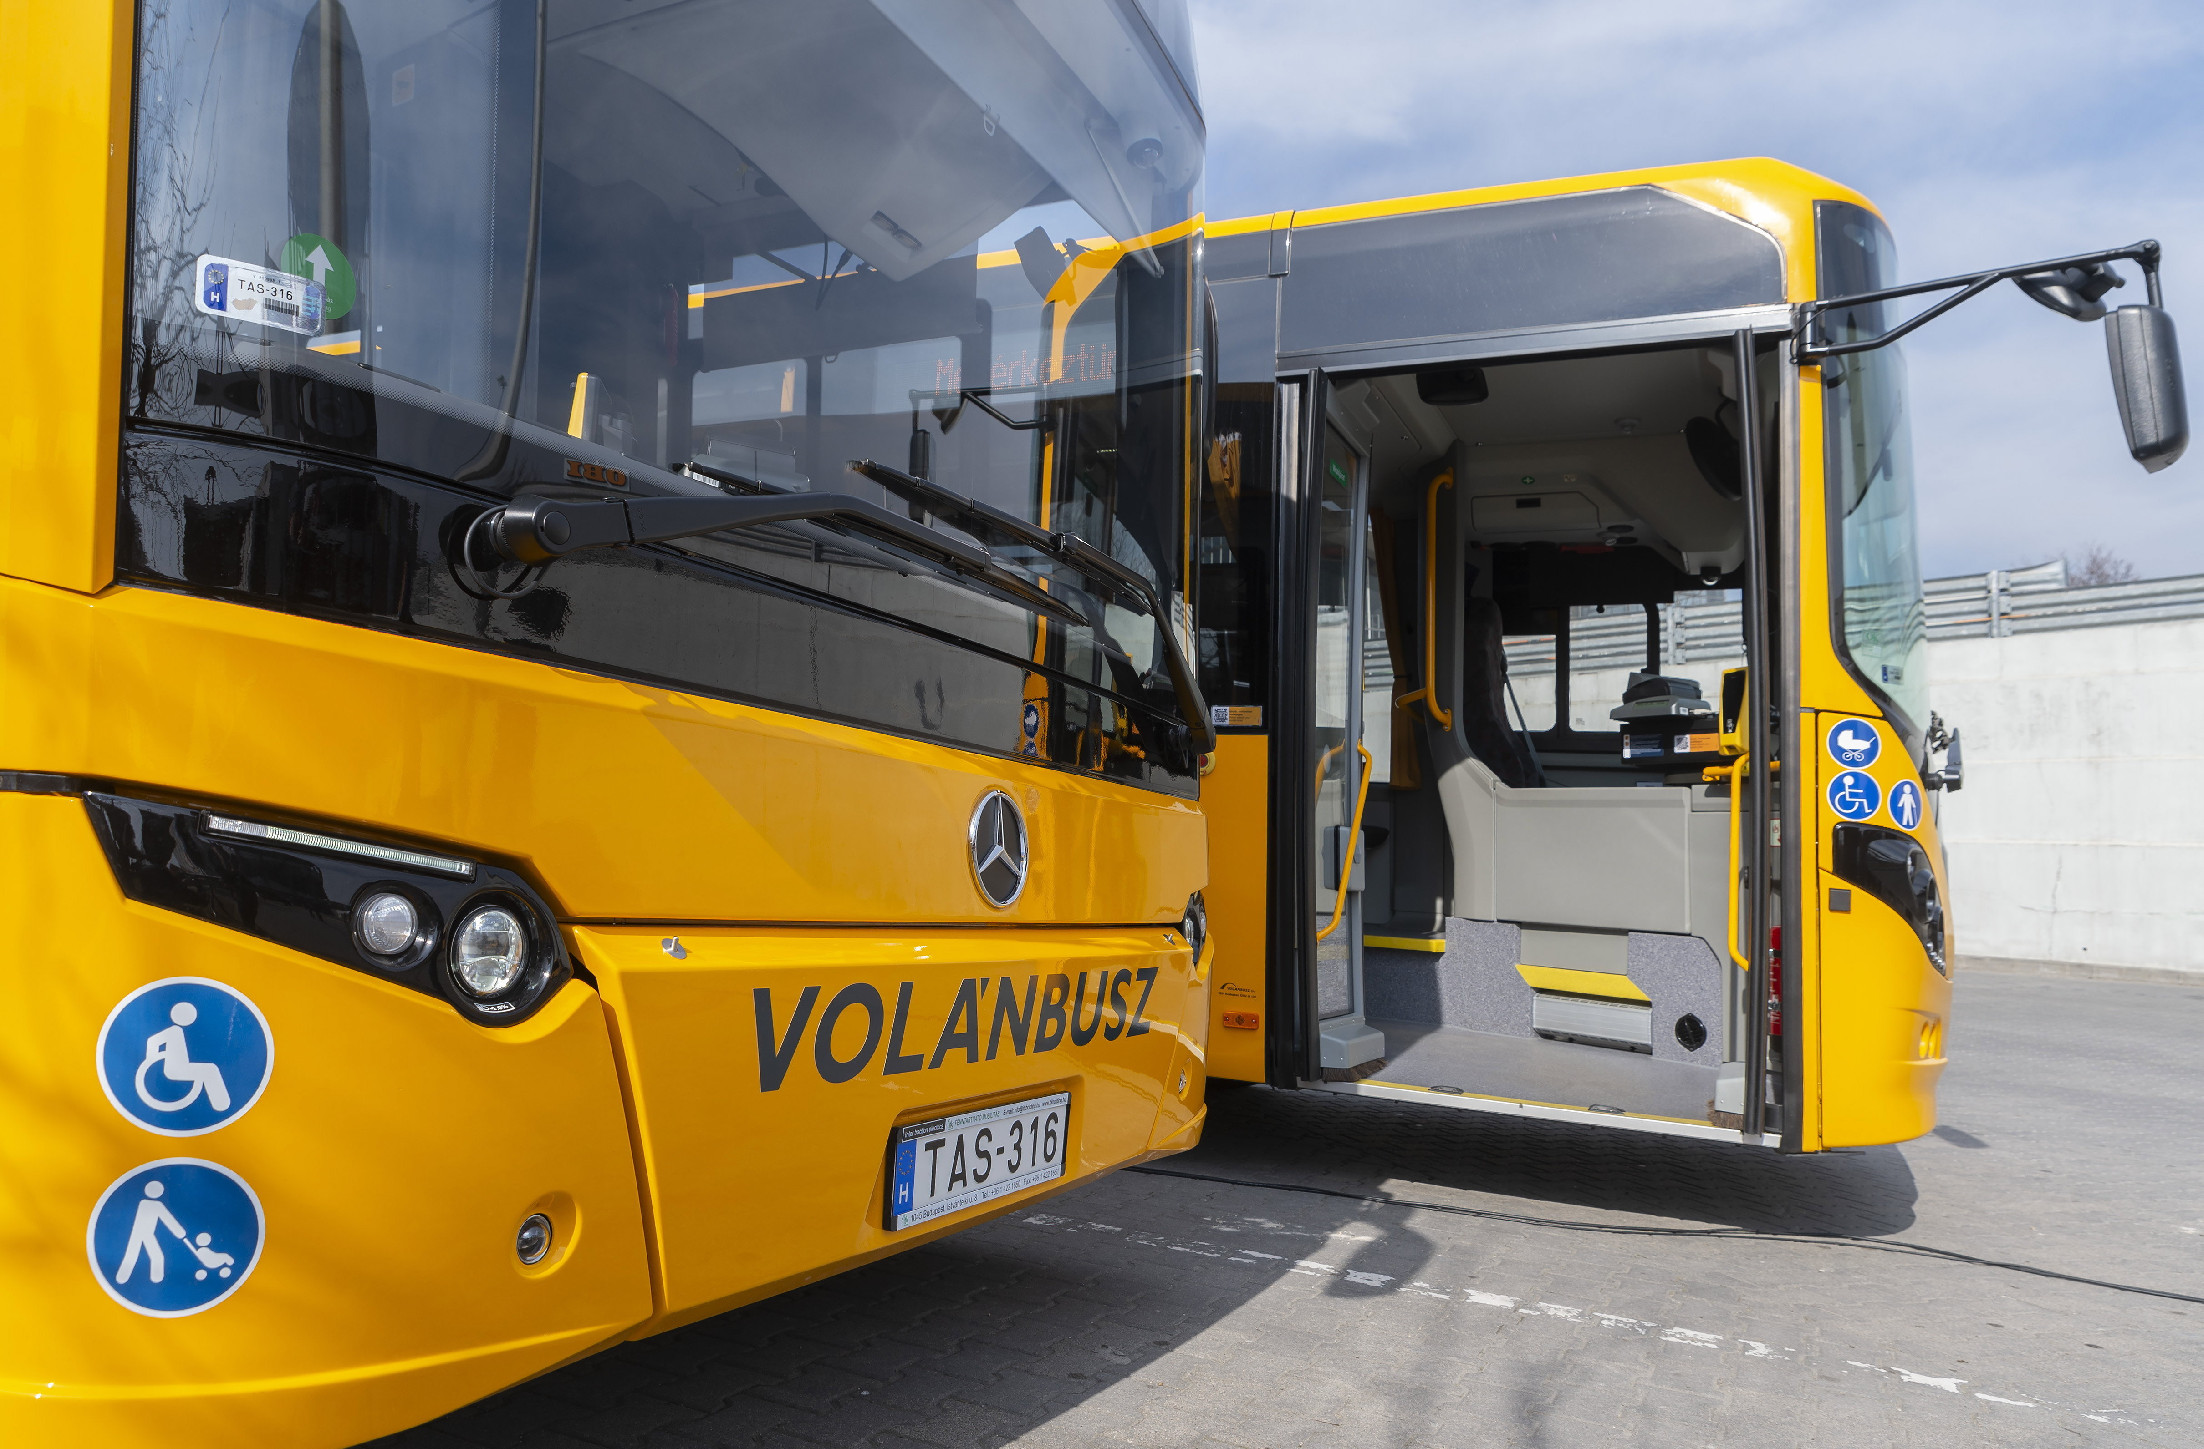 Rengeteggel új busszal bővül a Volánbusz